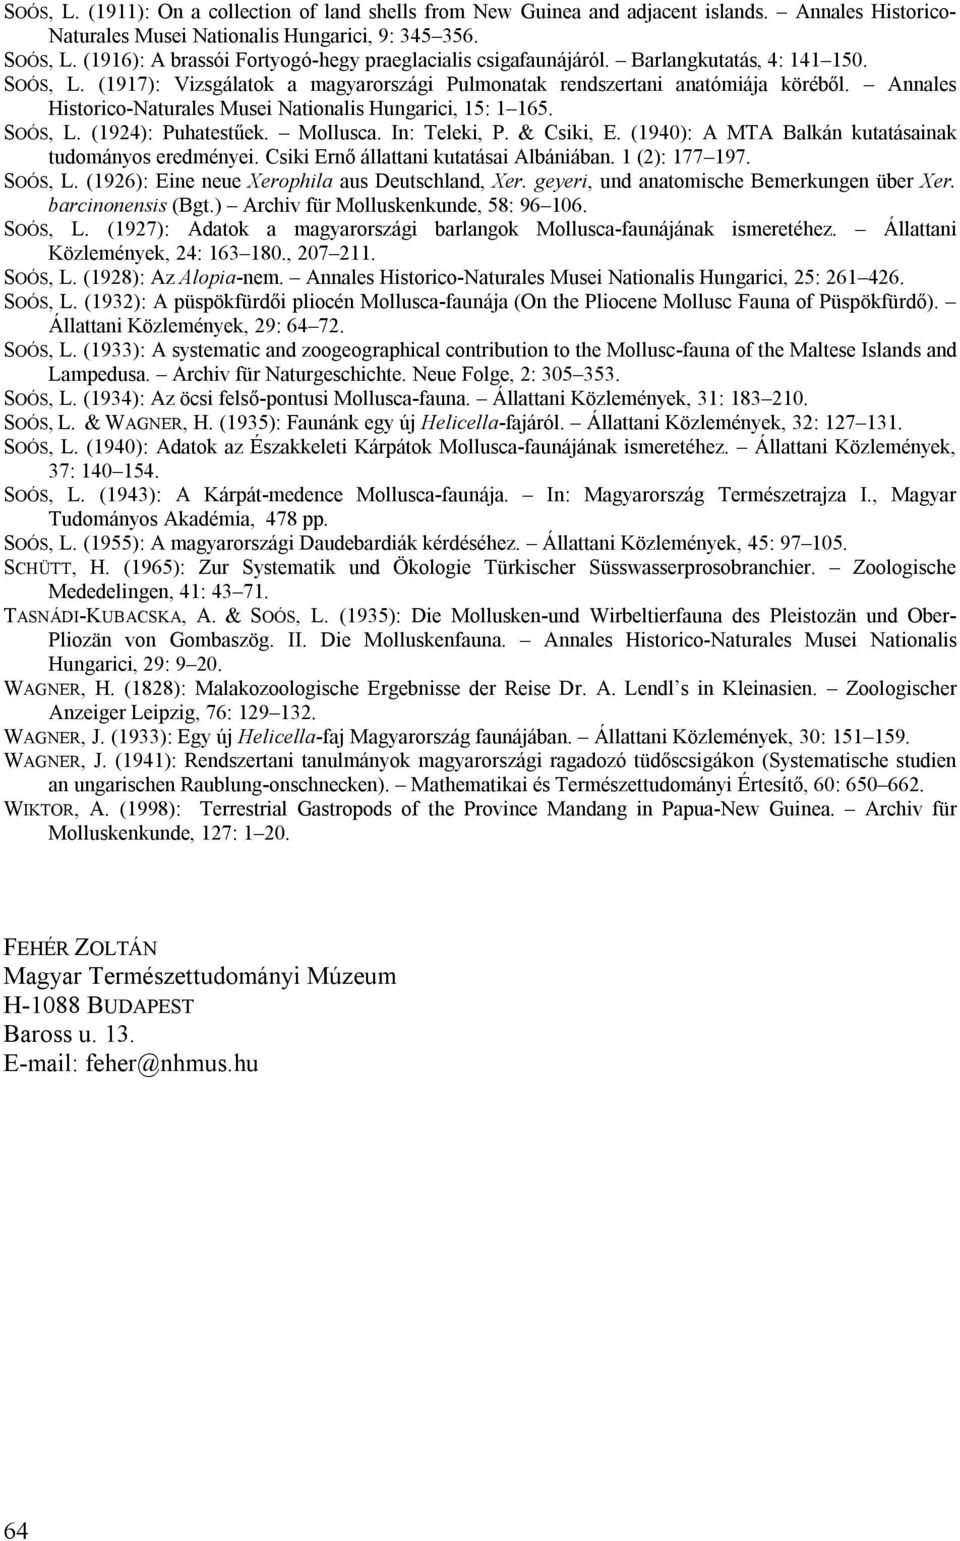 Annales Historico-Naturales Musei Nationalis Hungarici, 15: 1 165. SOÓS, L. (1924): Puhatestűek. Mollusca. In: Teleki, P. & Csiki, E. (1940): A MTA Balkán kutatásainak tudományos eredményei.